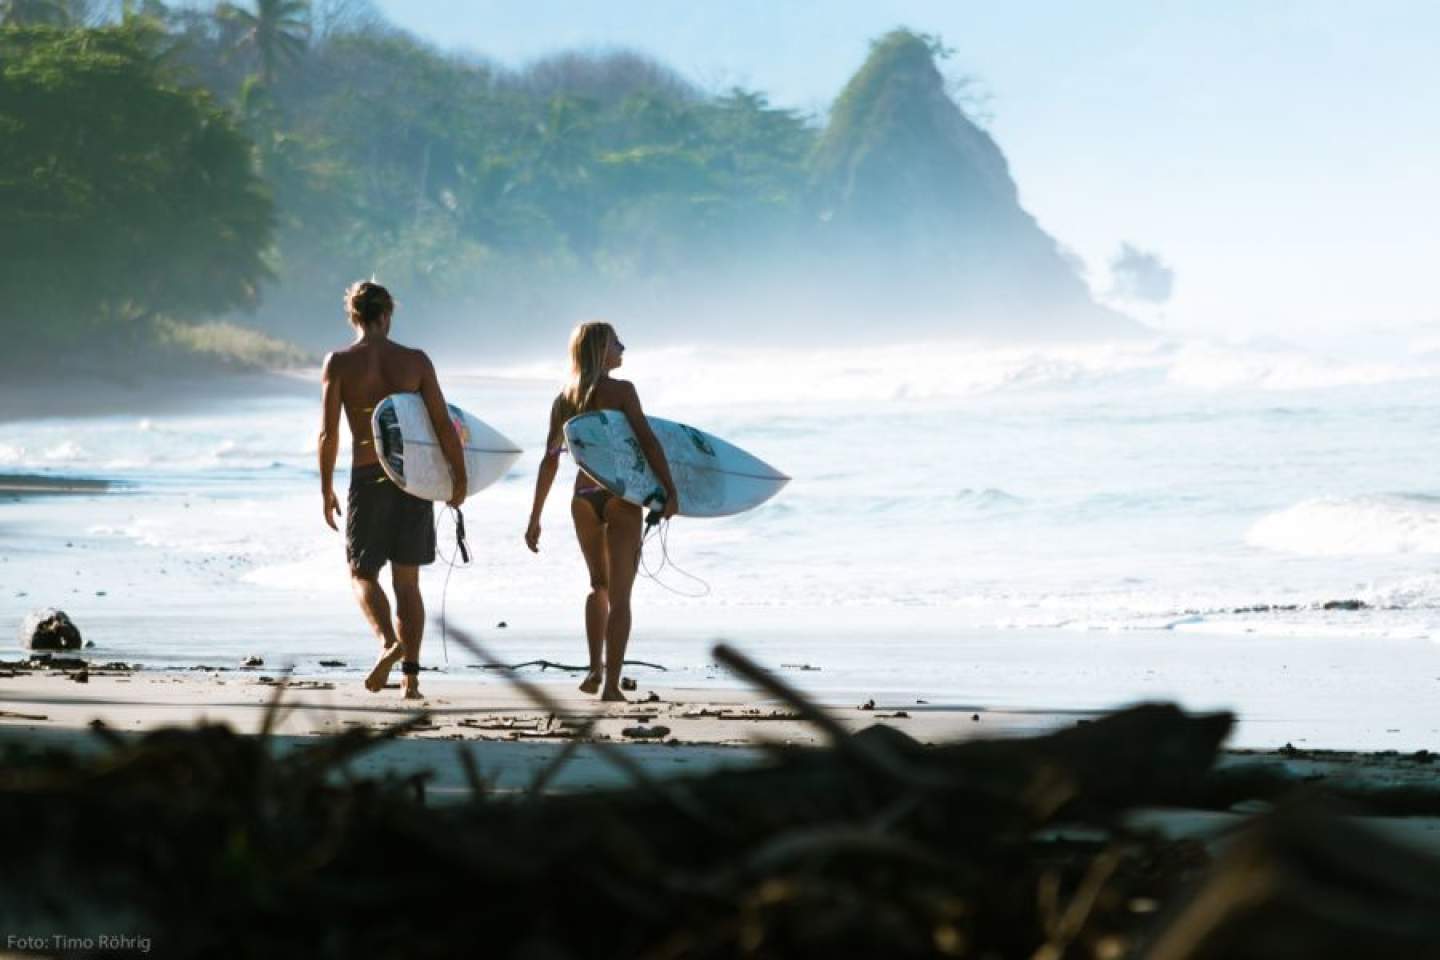 Top 5 Intermediate Surf Beaches In Costa Rica